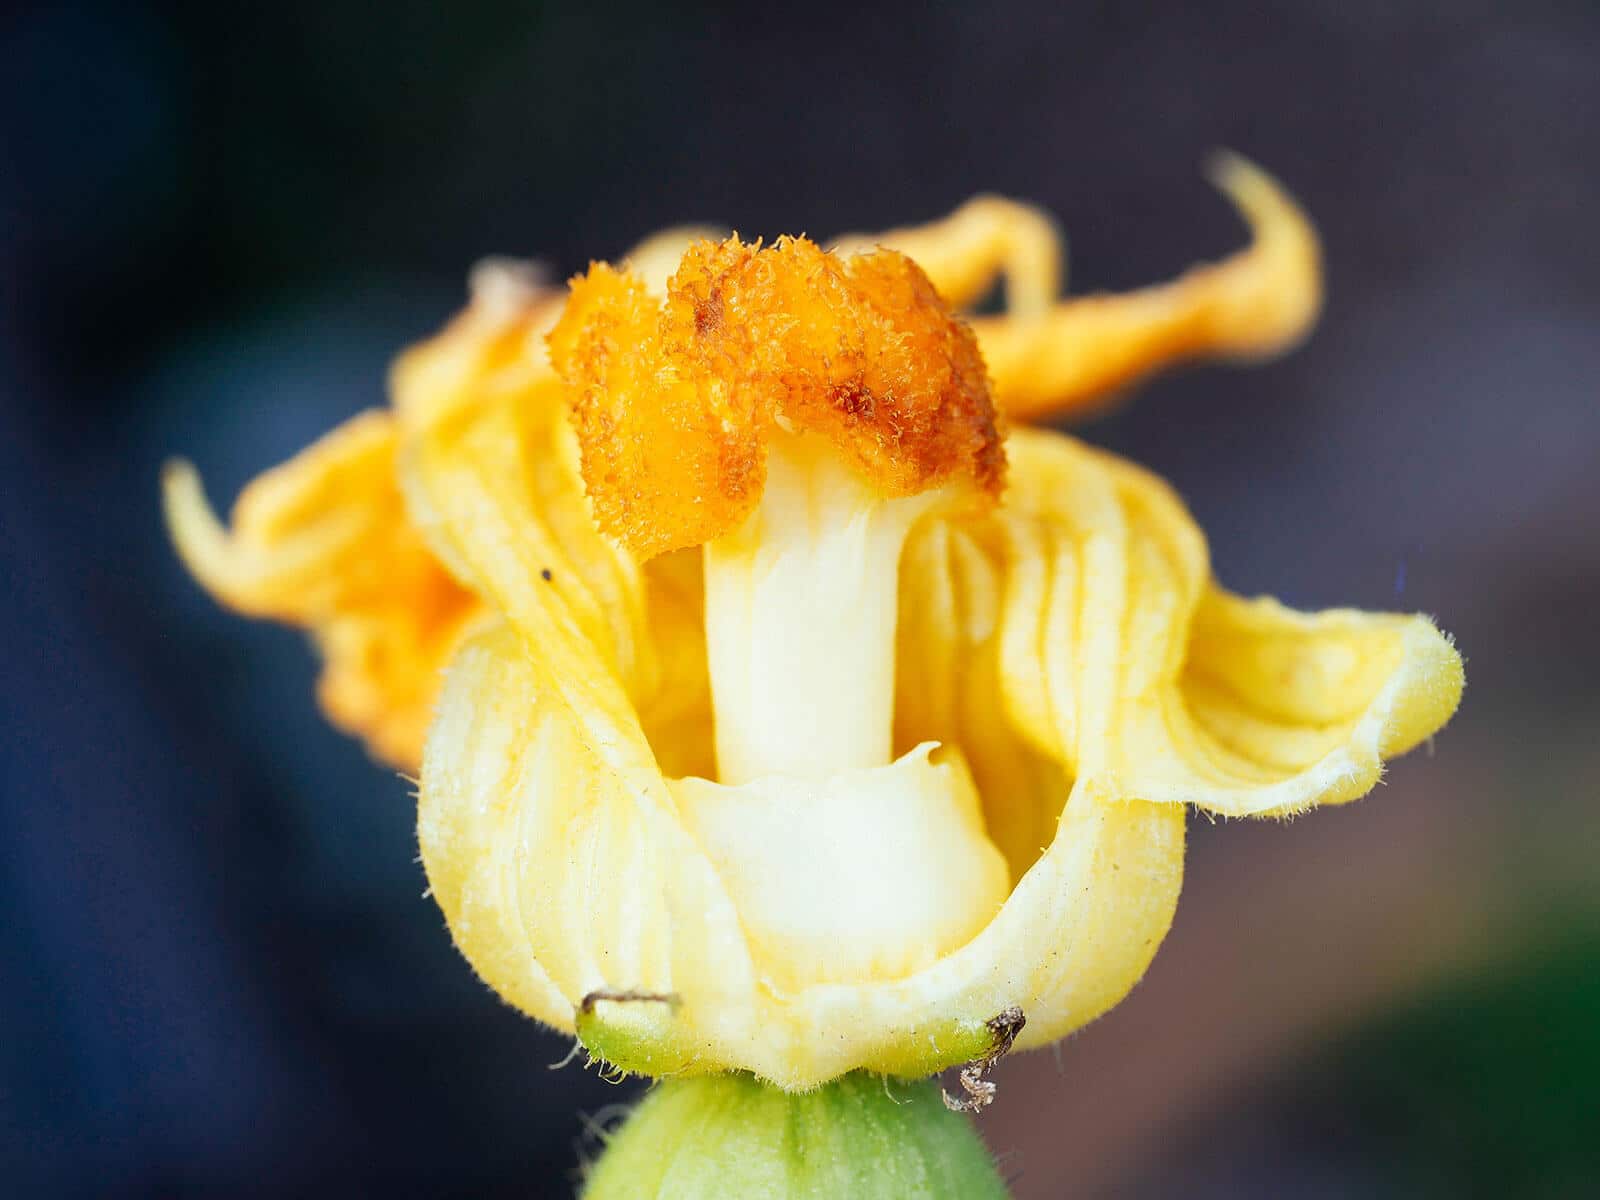 Stigma on a female squash flower after pollination